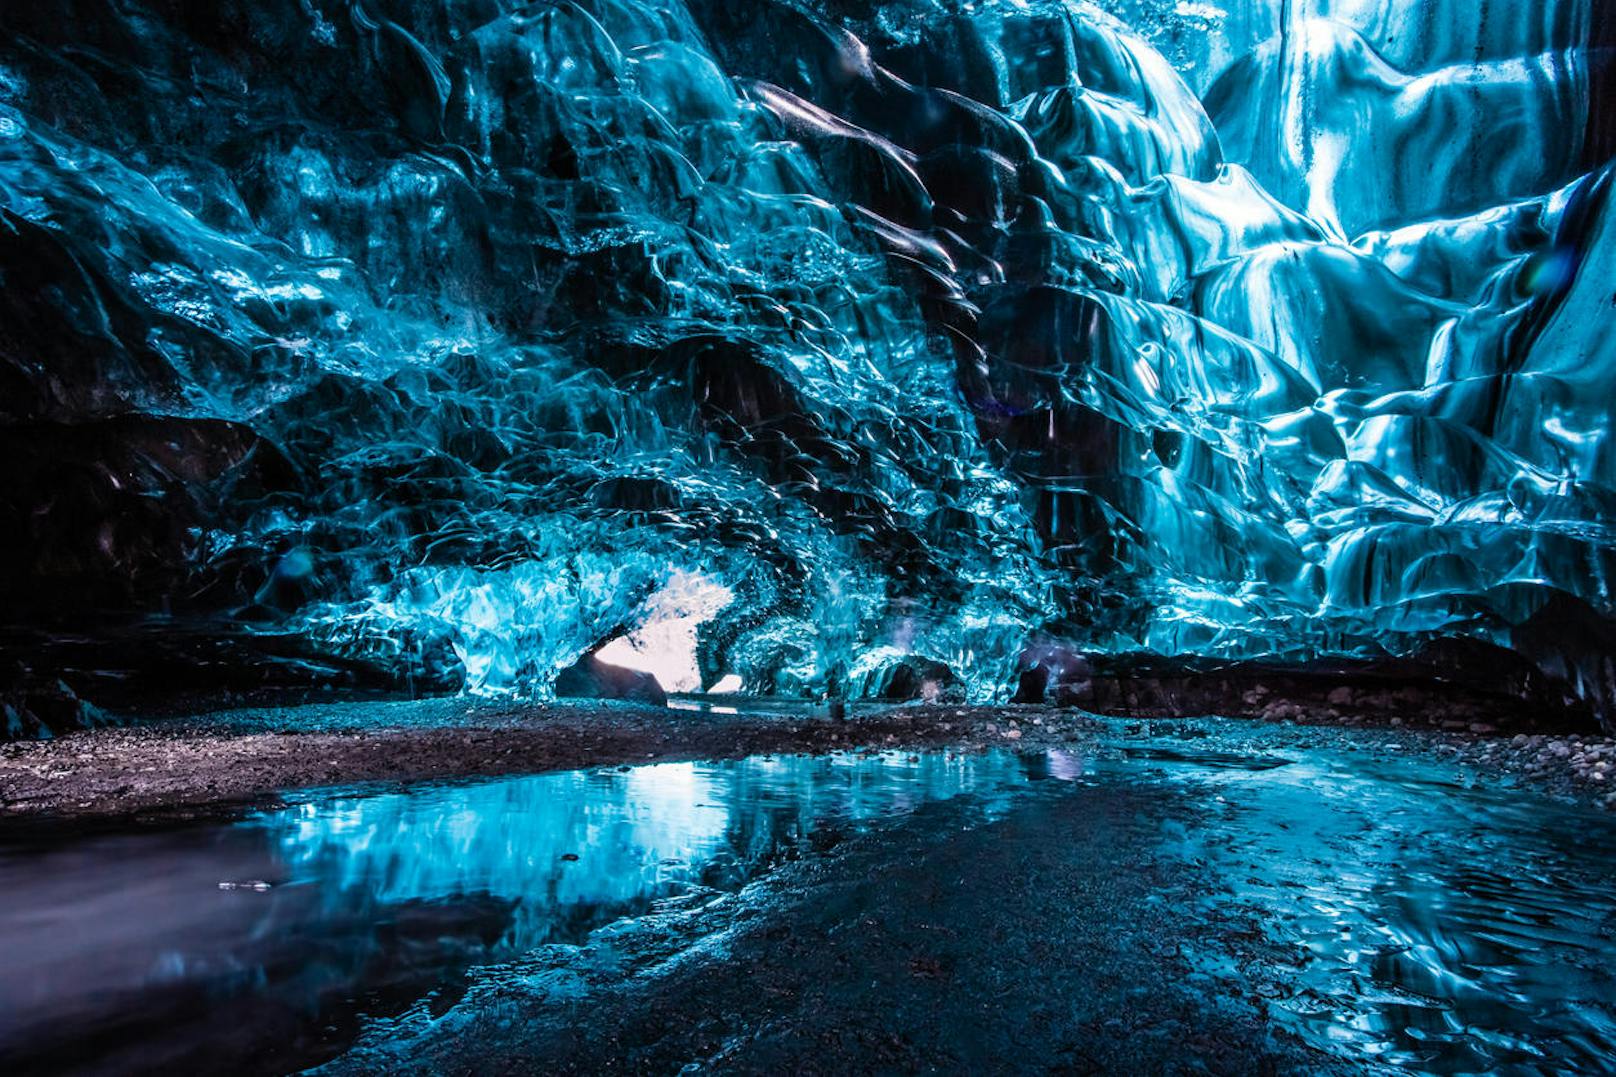 <b>Eishöhlen - Island</b>
Wundervolle Eisformationen, bläuliches Licht und eine unwirklich friedvolle Atmosphäre machen einen Trip in diese Höhlen zu einem absolut einzigartigen Erlebnis. 